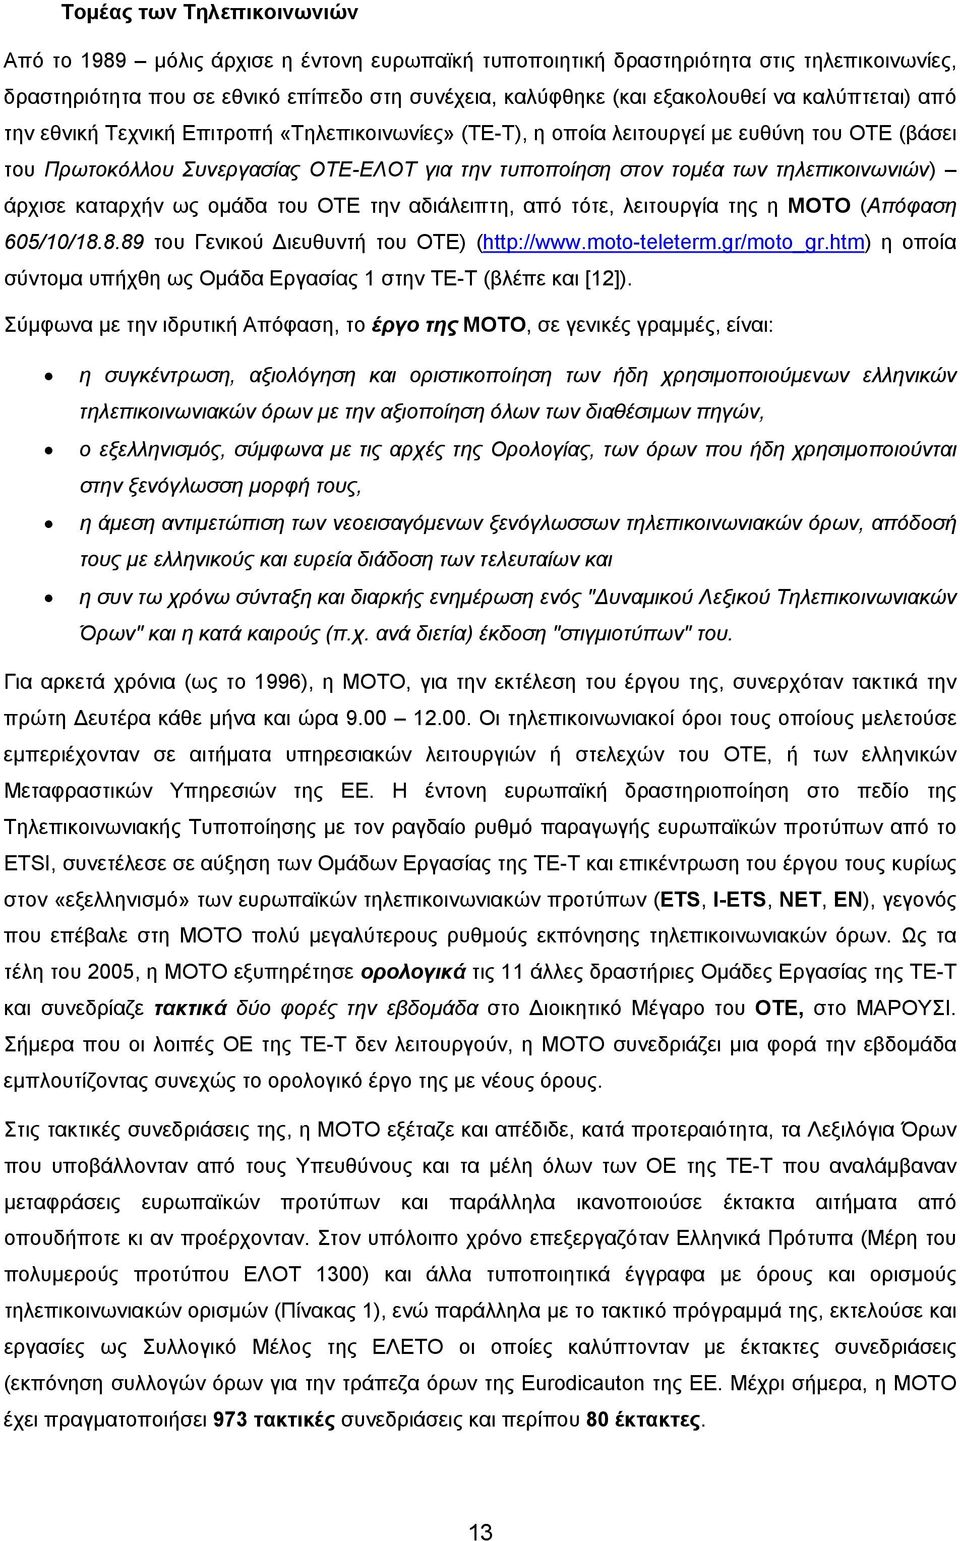 τηλεπικοινωνιών) άρχισε καταρχήν ως ομάδα του ΟΤΕ την αδιάλειπτη, από τότε, λειτουργία της η ΜΟΤΟ (Απόφαση 605/10/18.8.89 του Γενικού Διευθυντή του ΟΤΕ) (http://www.moto-teleterm.gr/moto_gr.